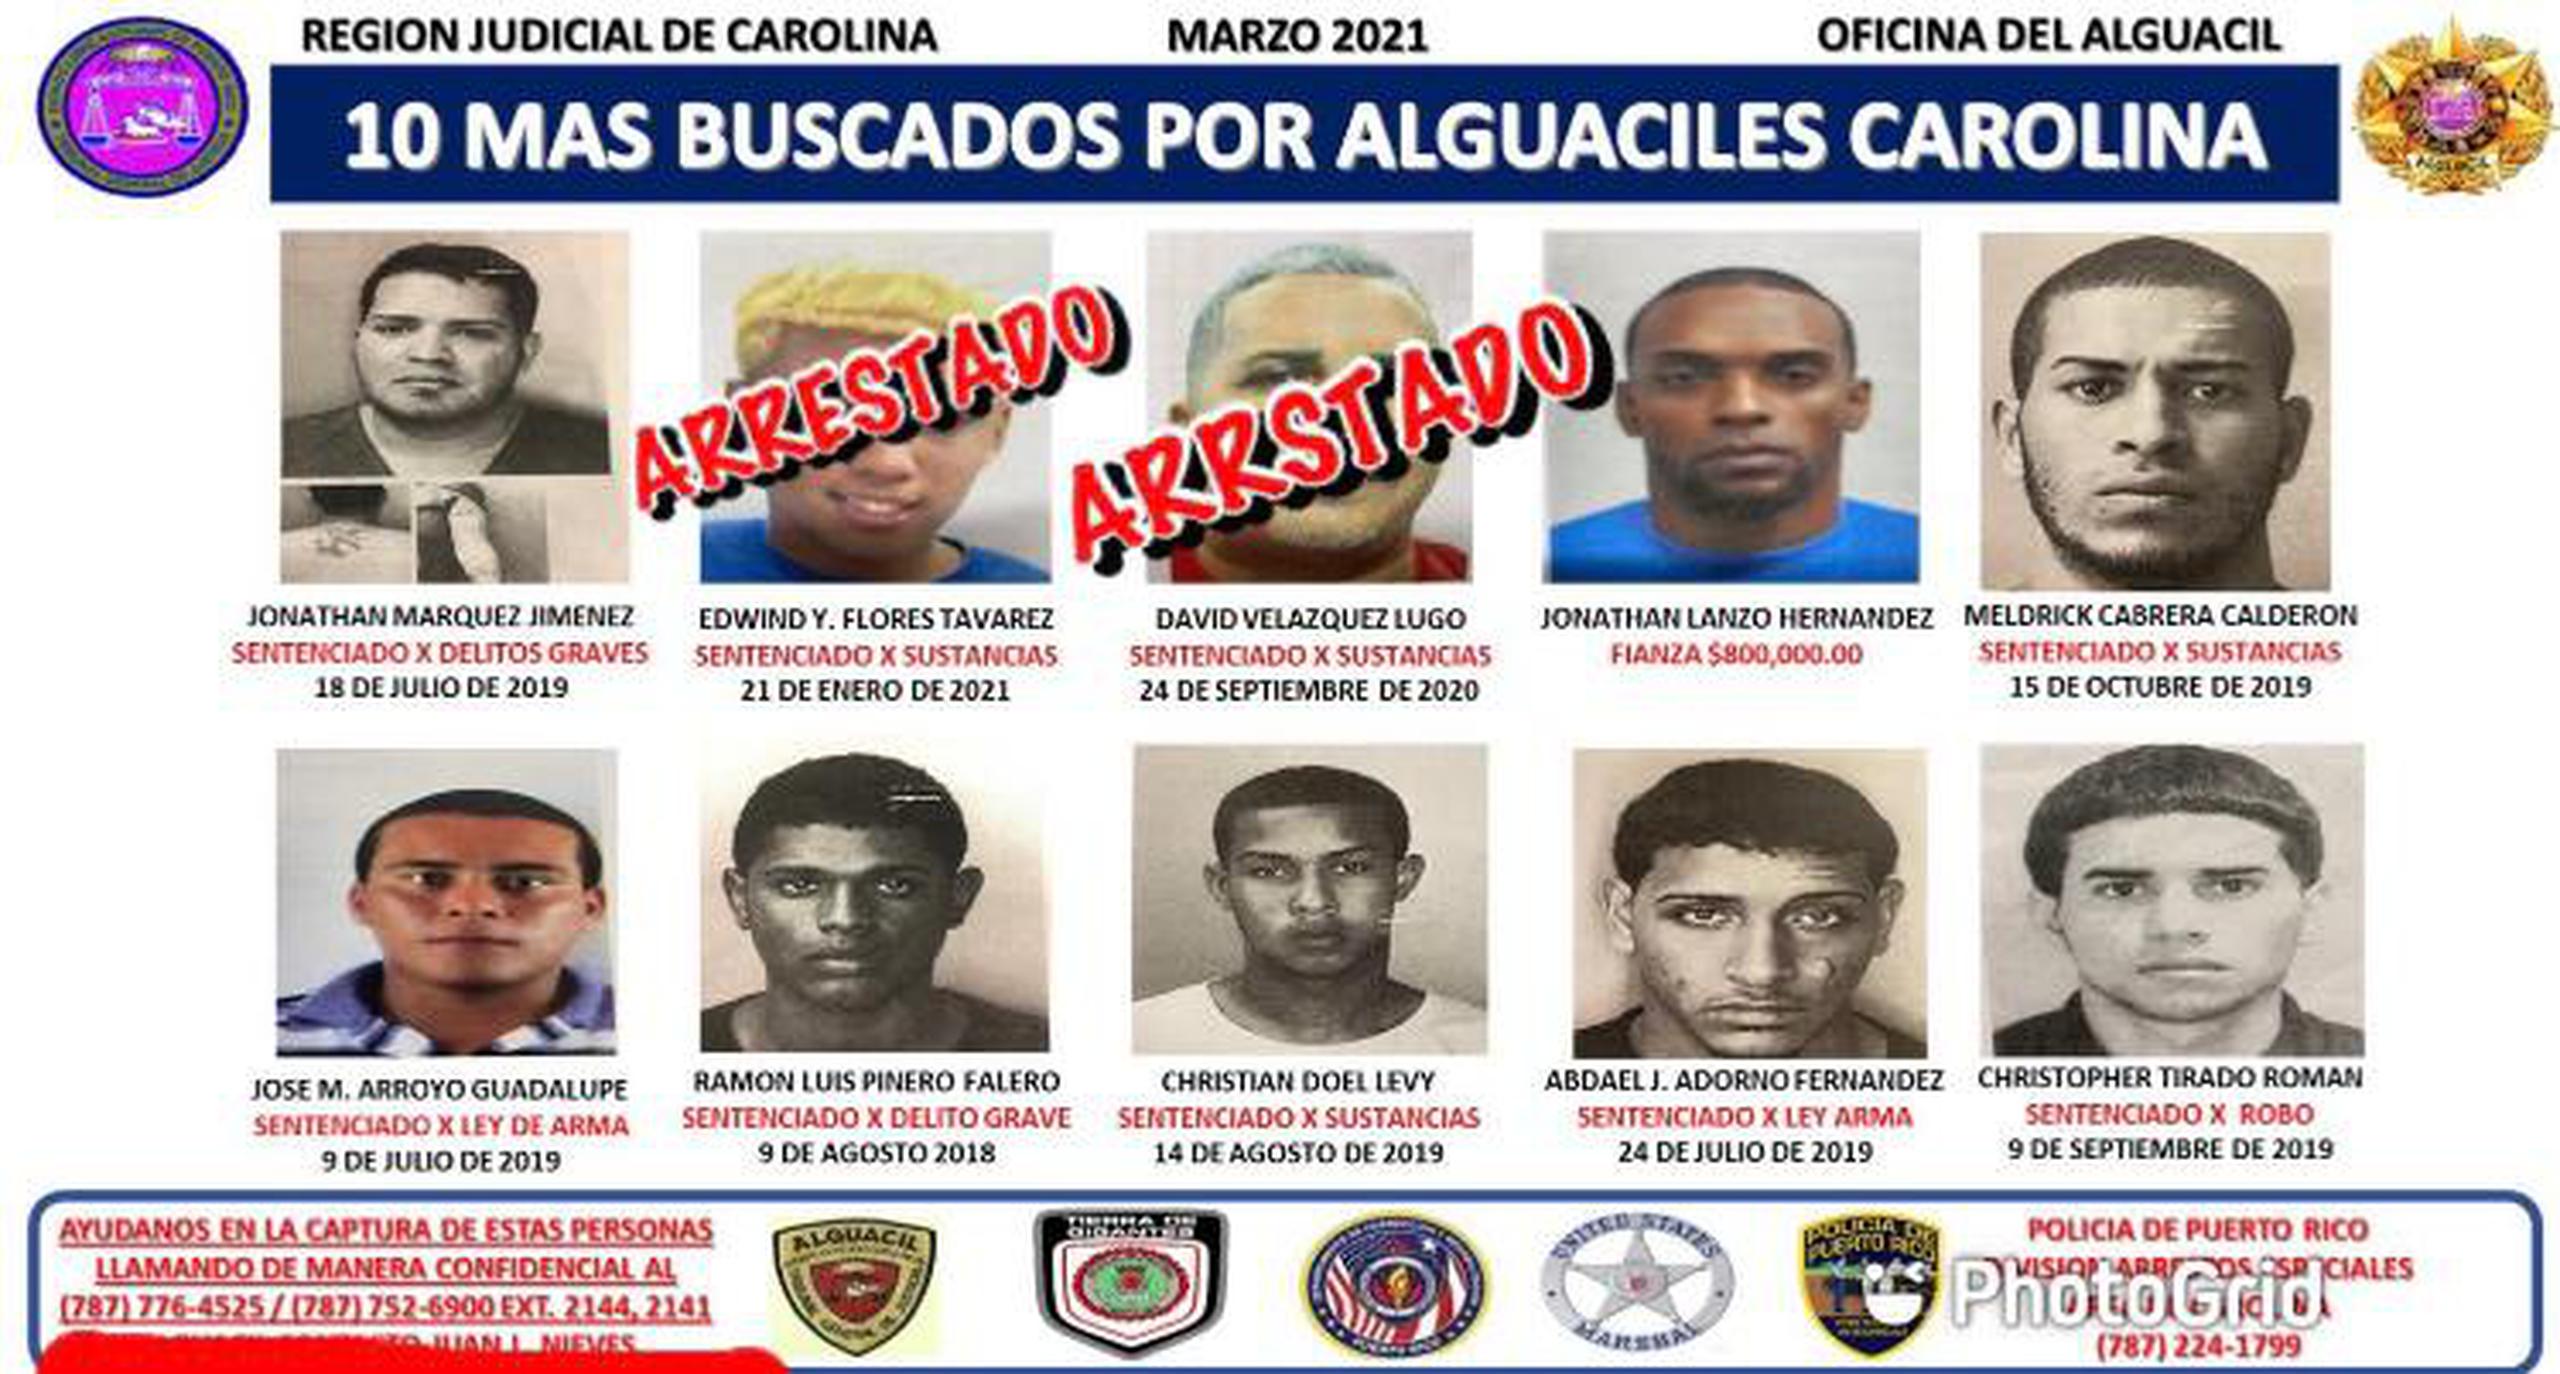 El arrestado, identificado como Jonathan Márquez Jiménez, figuraba como el primero en la lista de Los Más Buscados por los Alguaciles de la Región Judicial de Carolina.